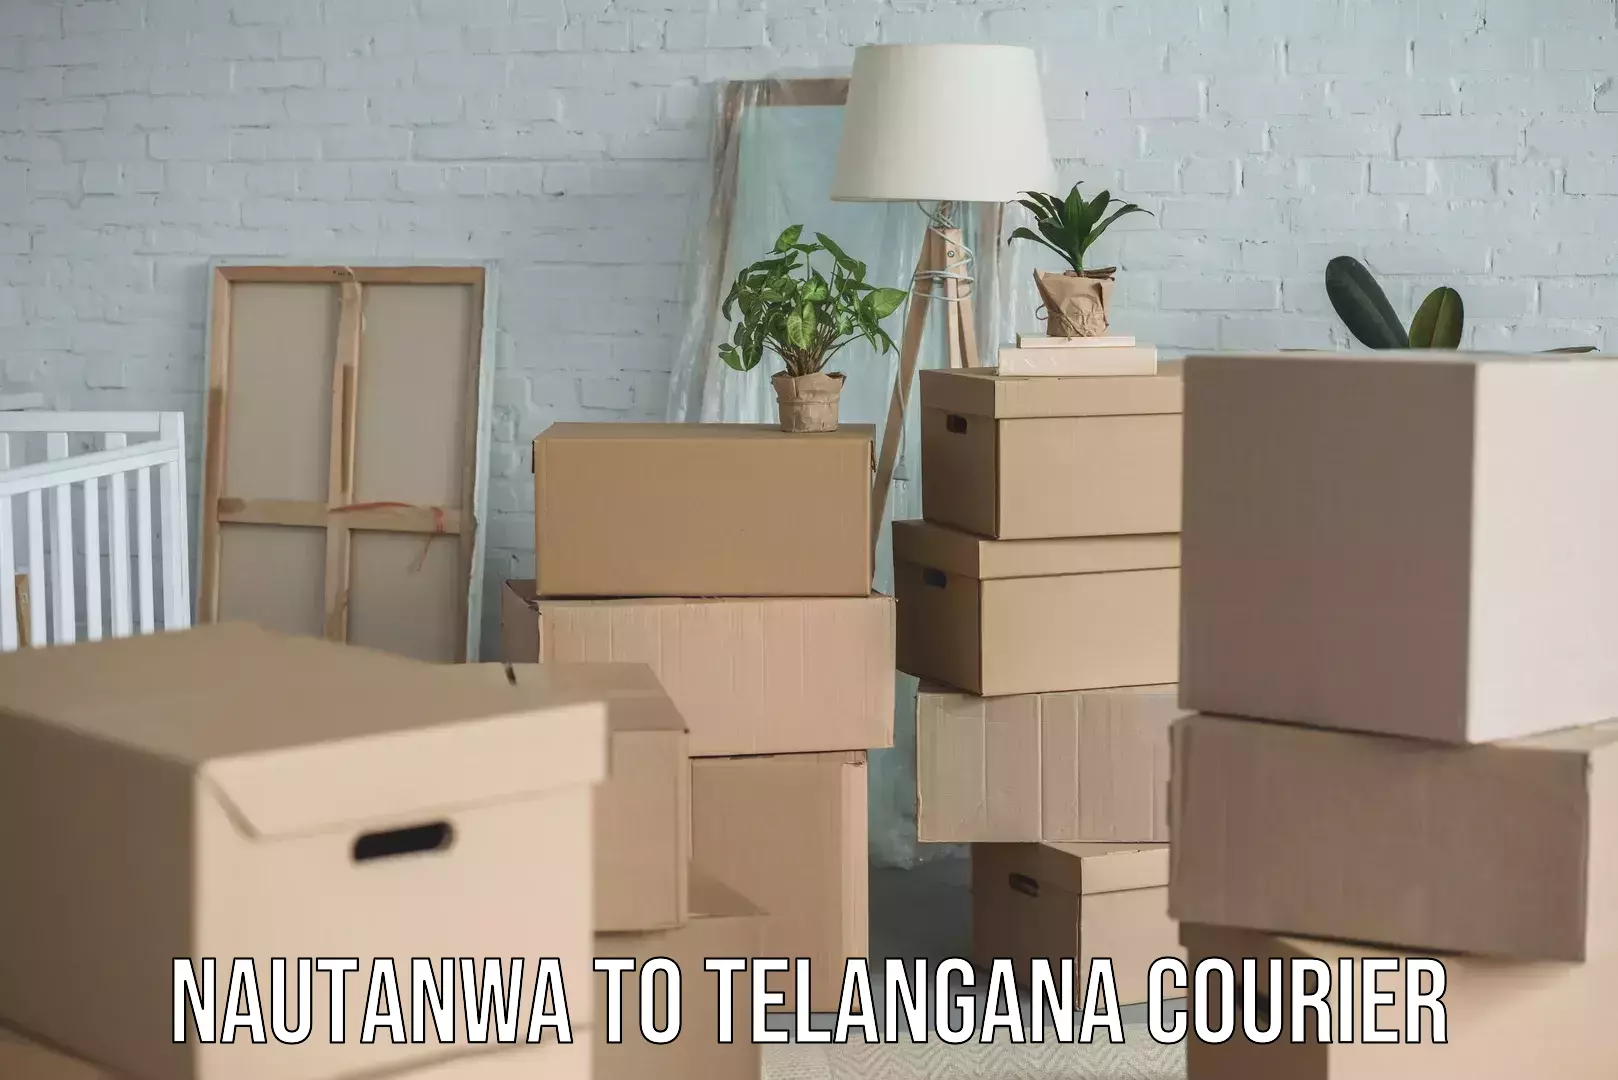 Professional furniture movers Nautanwa to Telangana